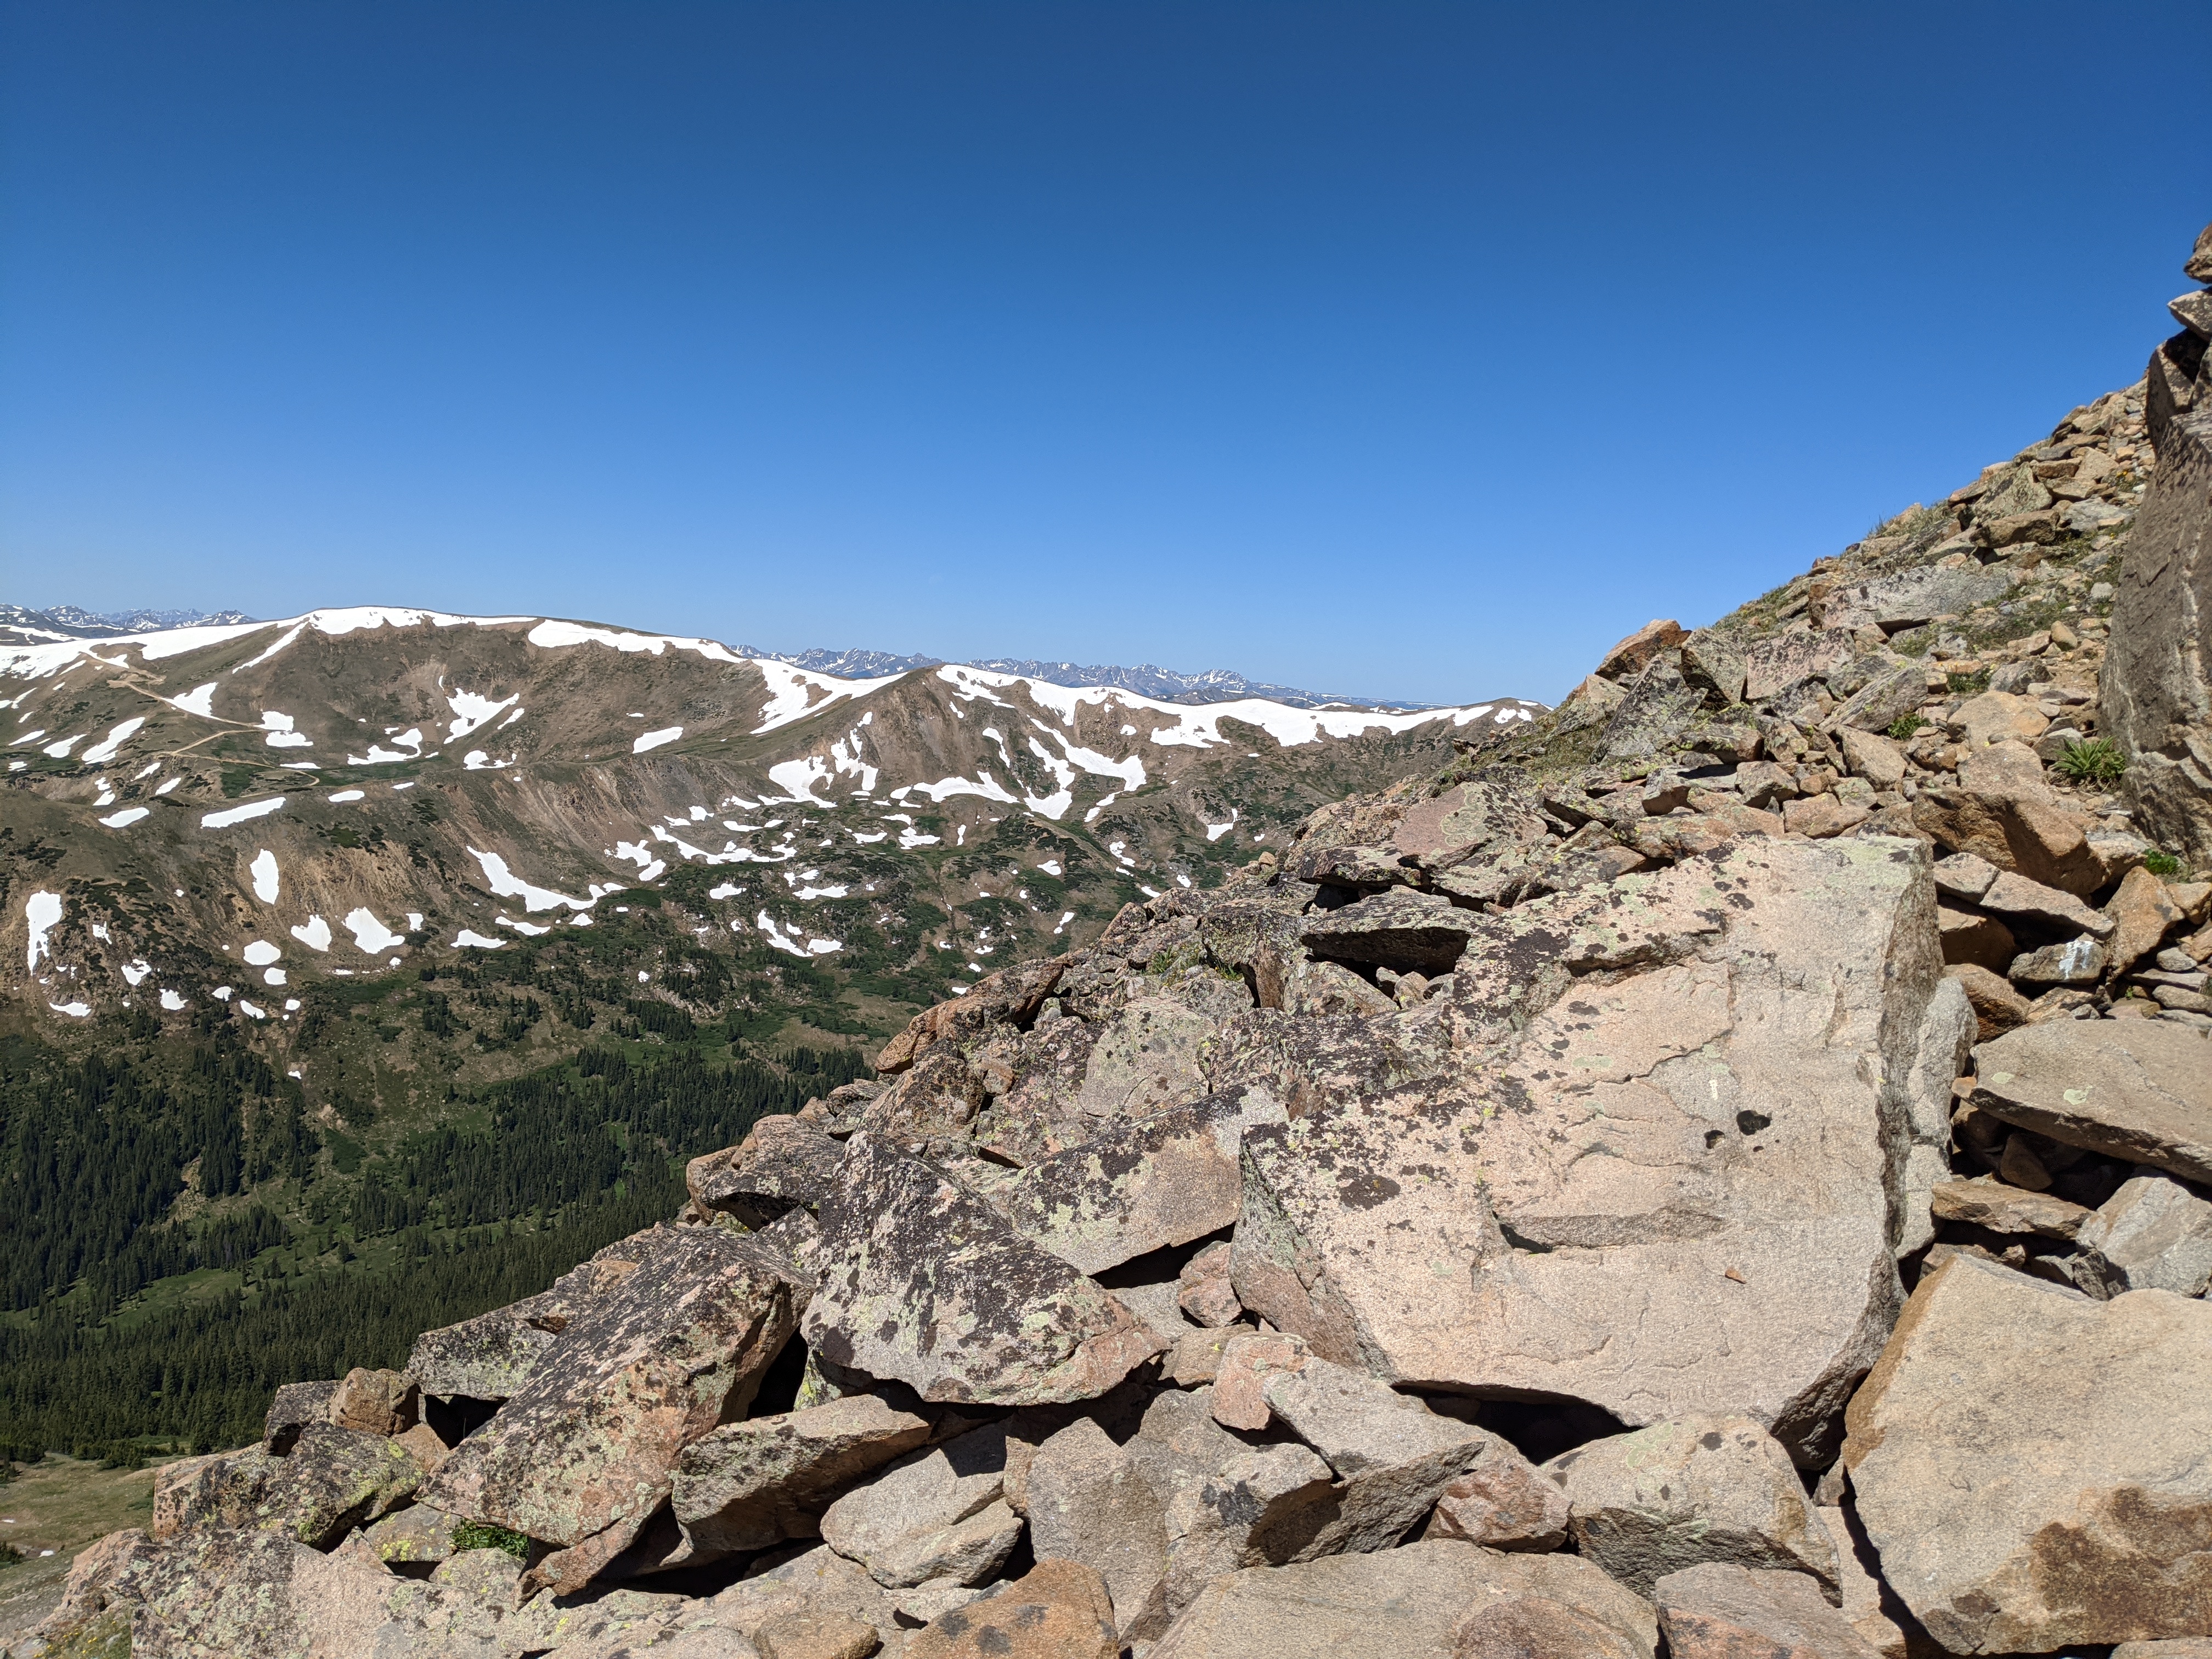 300 yards from the summit of Vasquez Peak.